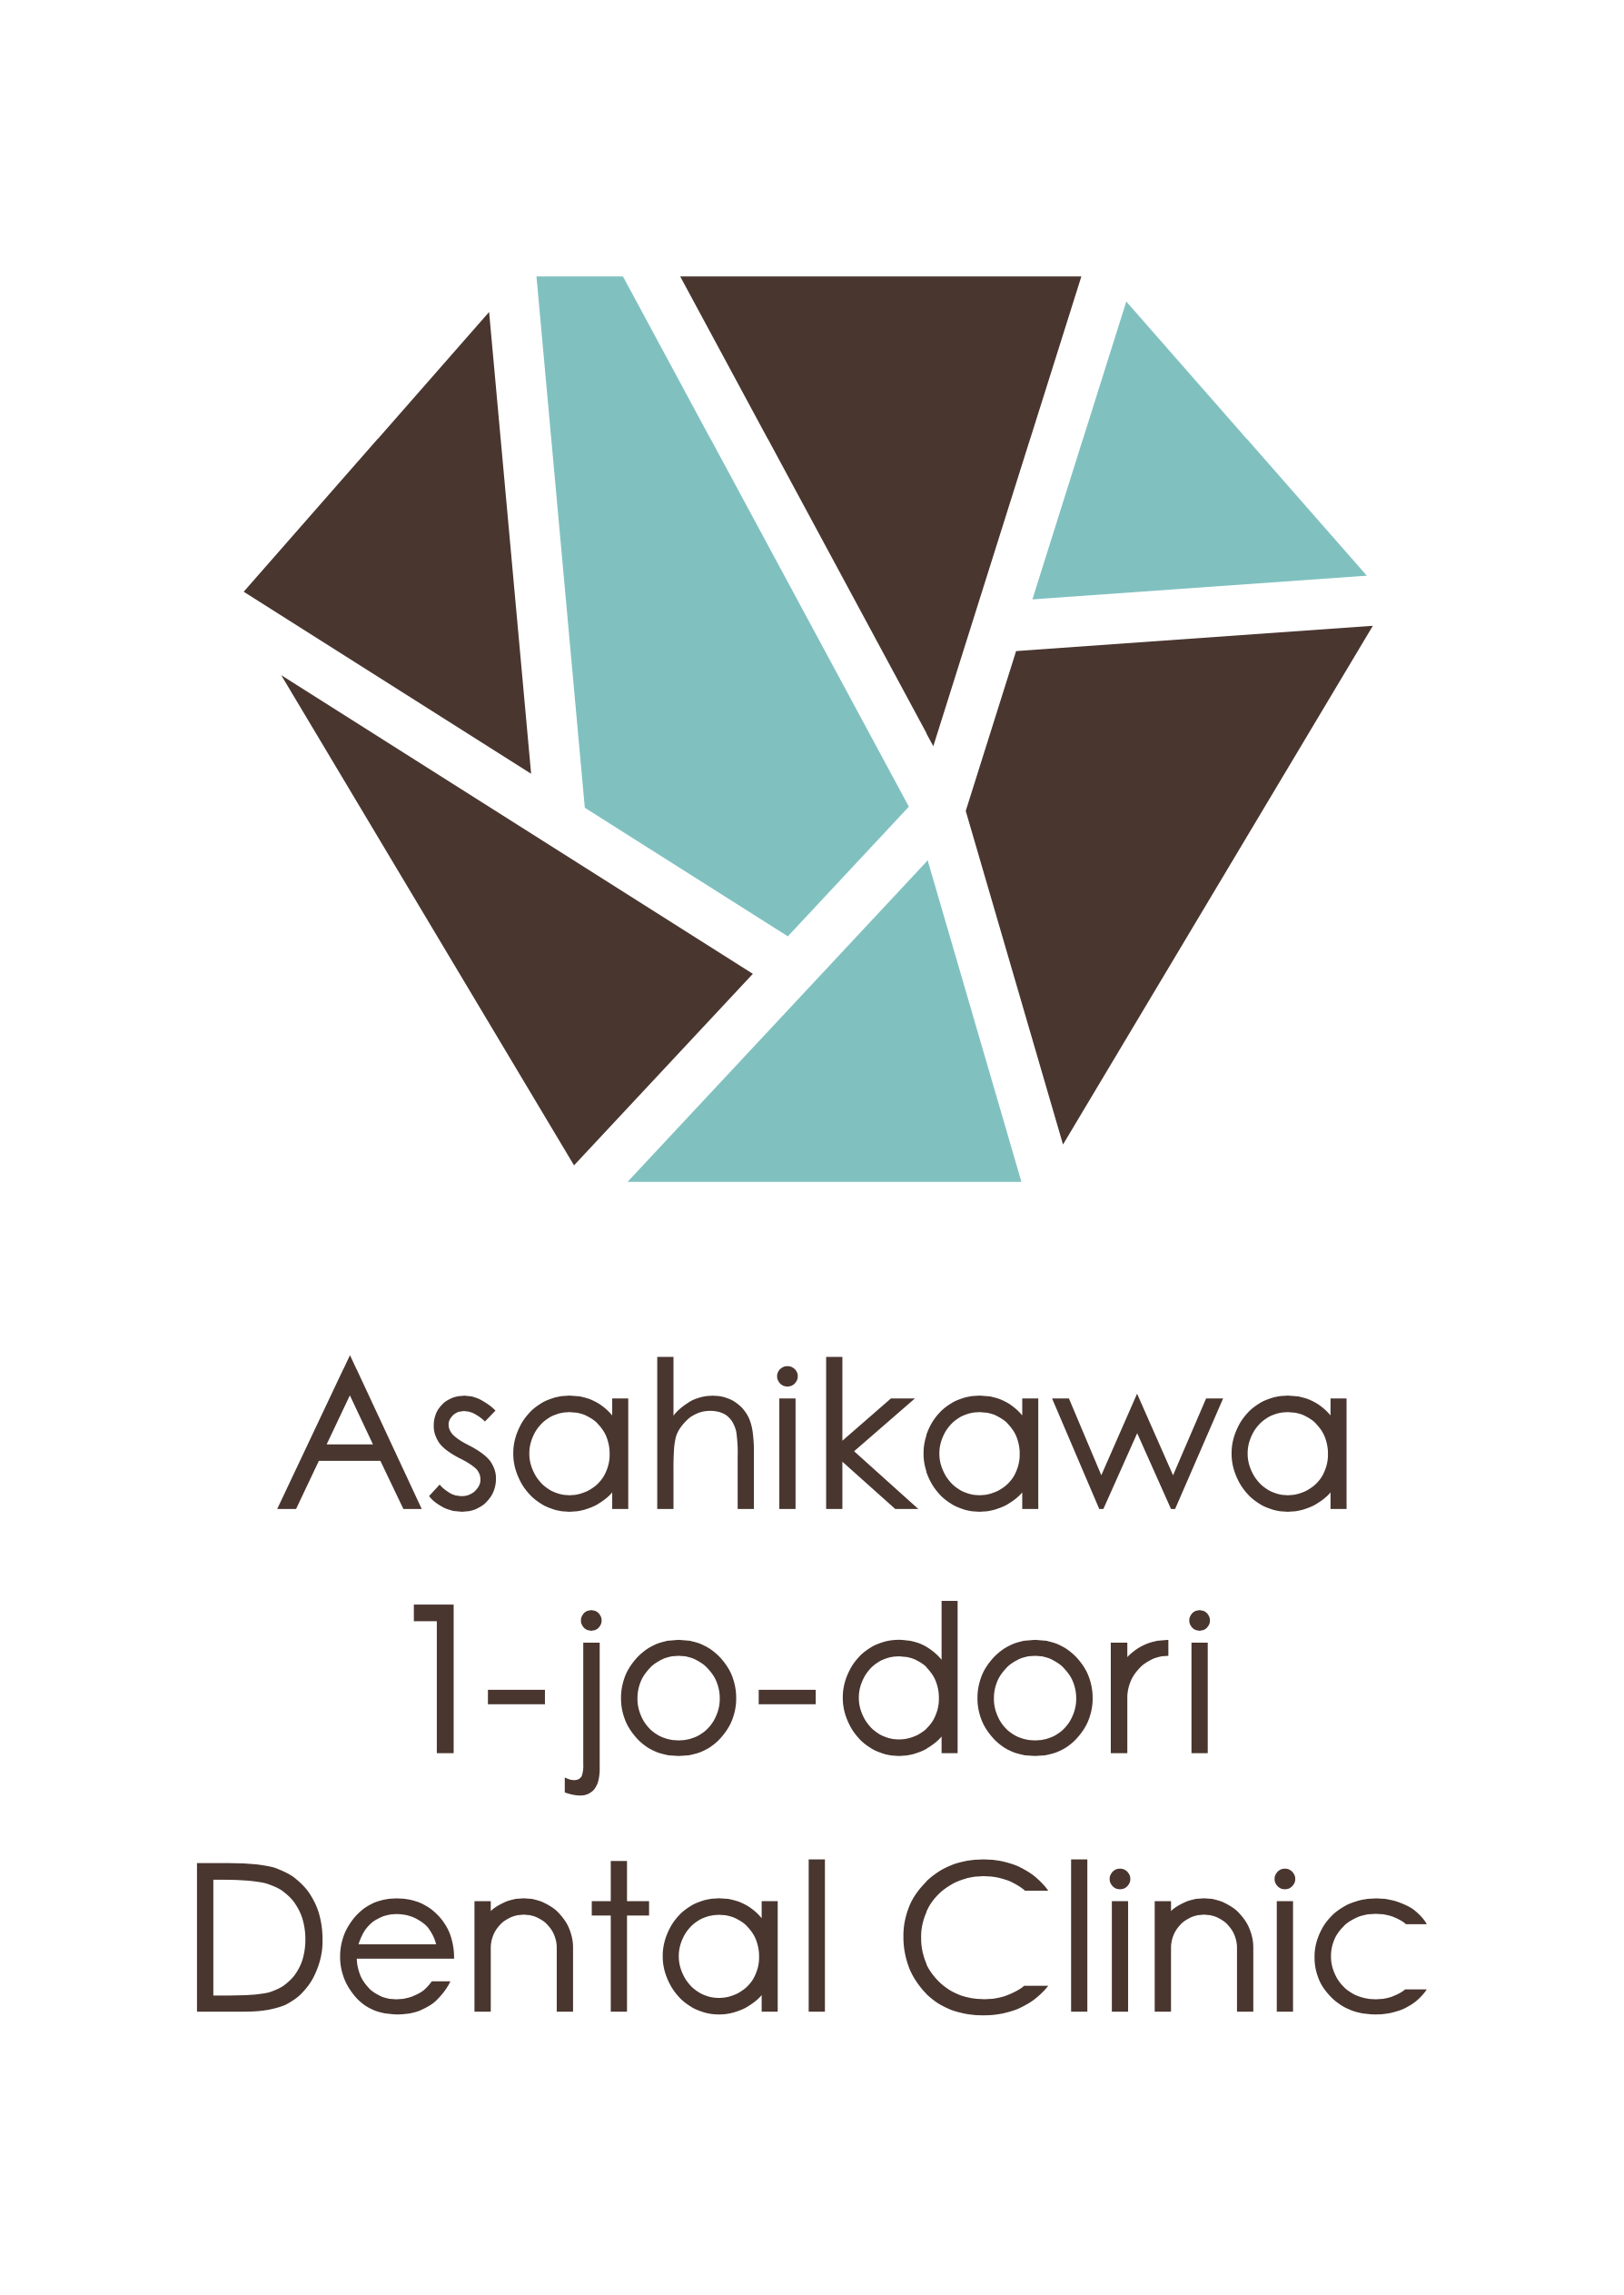 asahikawa 1jo dental